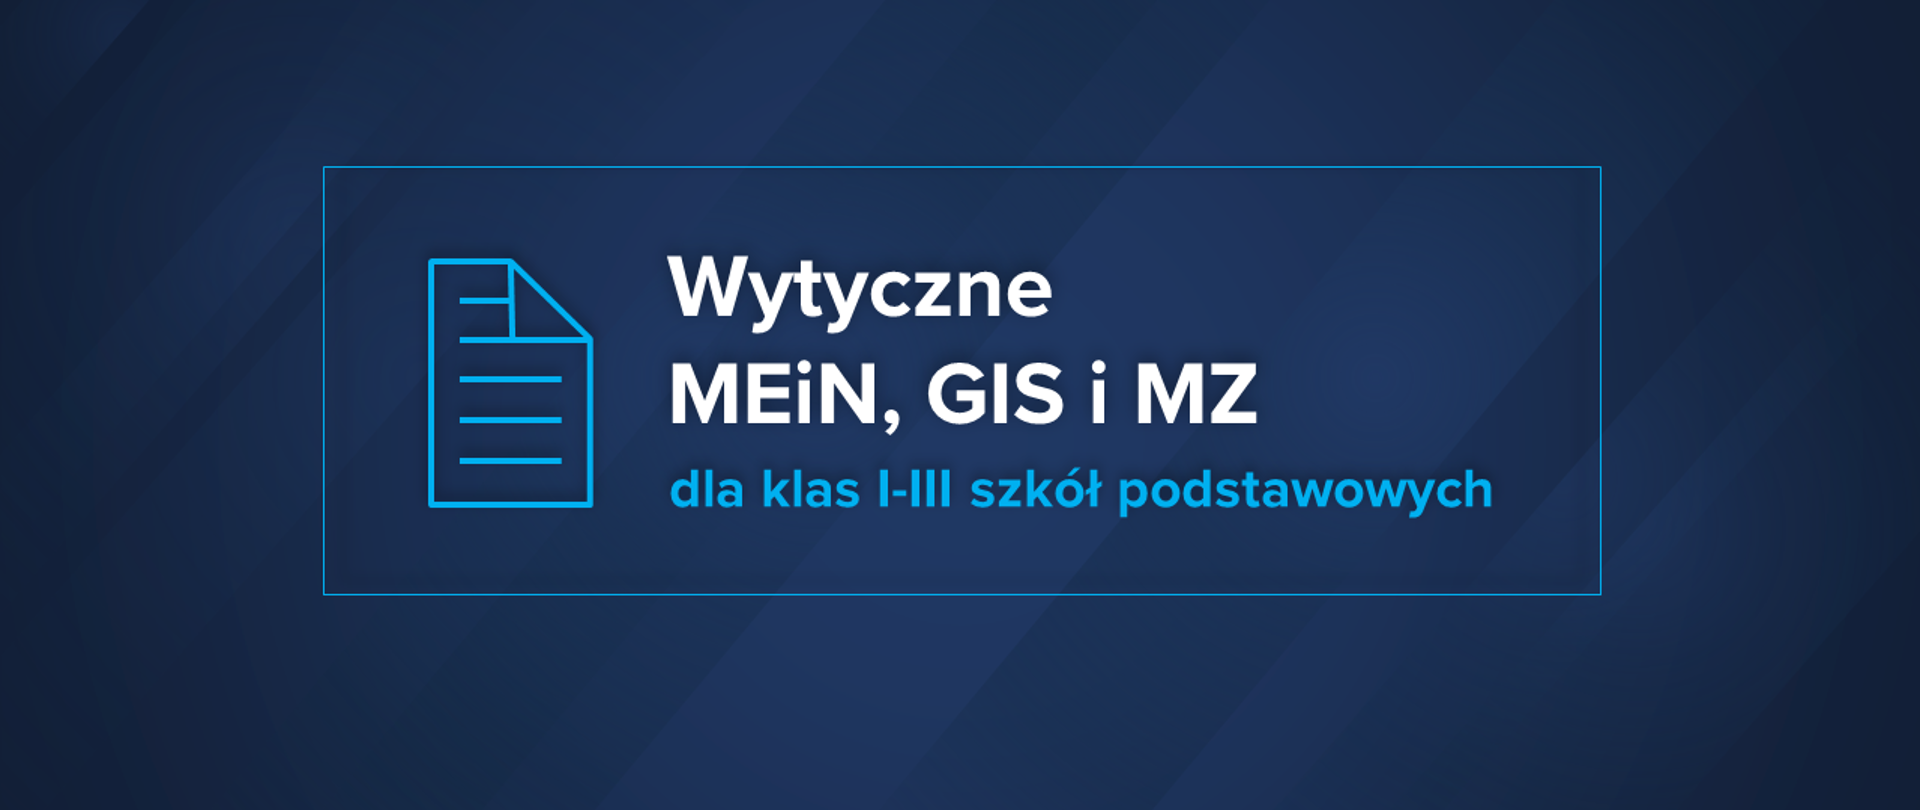 Wytyczne MEiN, MZ i GIS dla klas 1-3 szkół podstawowych - Ministerstwo  Edukacji i Nauki - Portal Gov.pl